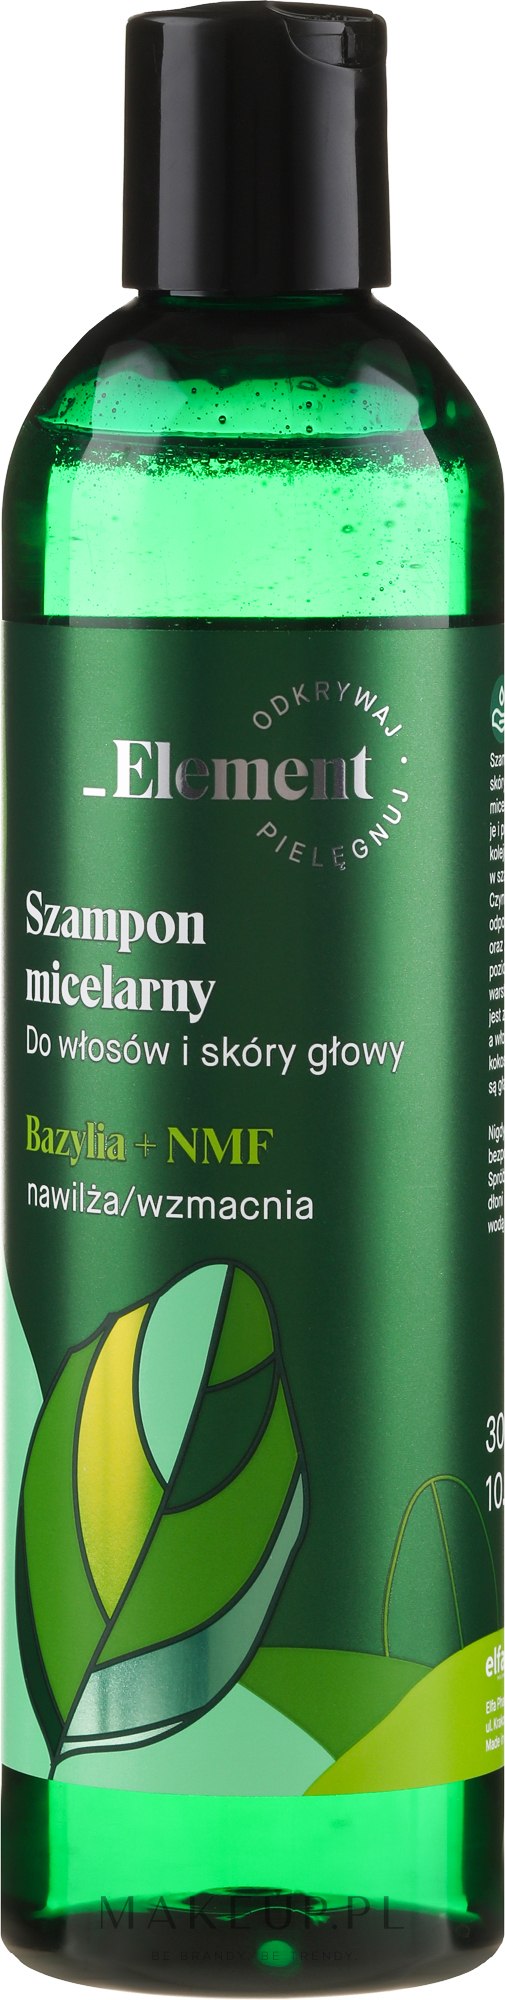 szampon z bazylia makeup